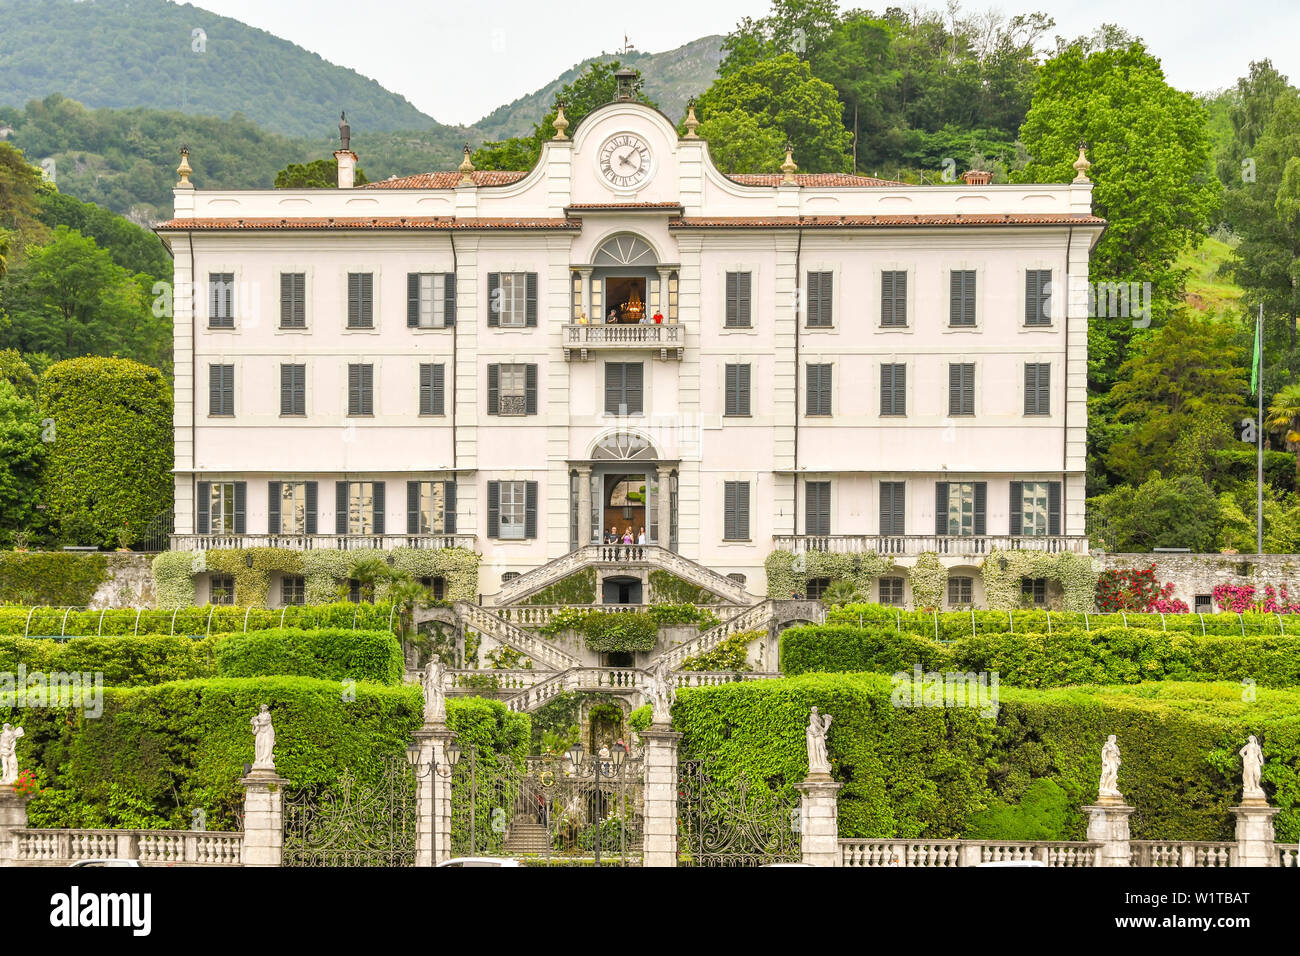 TREMEZZO, LAKE COMO, ITALY - JUNE 2019: Exterior view of the front of the Villa Carlotta in Tremezzo on Lake Como. Stock Photo